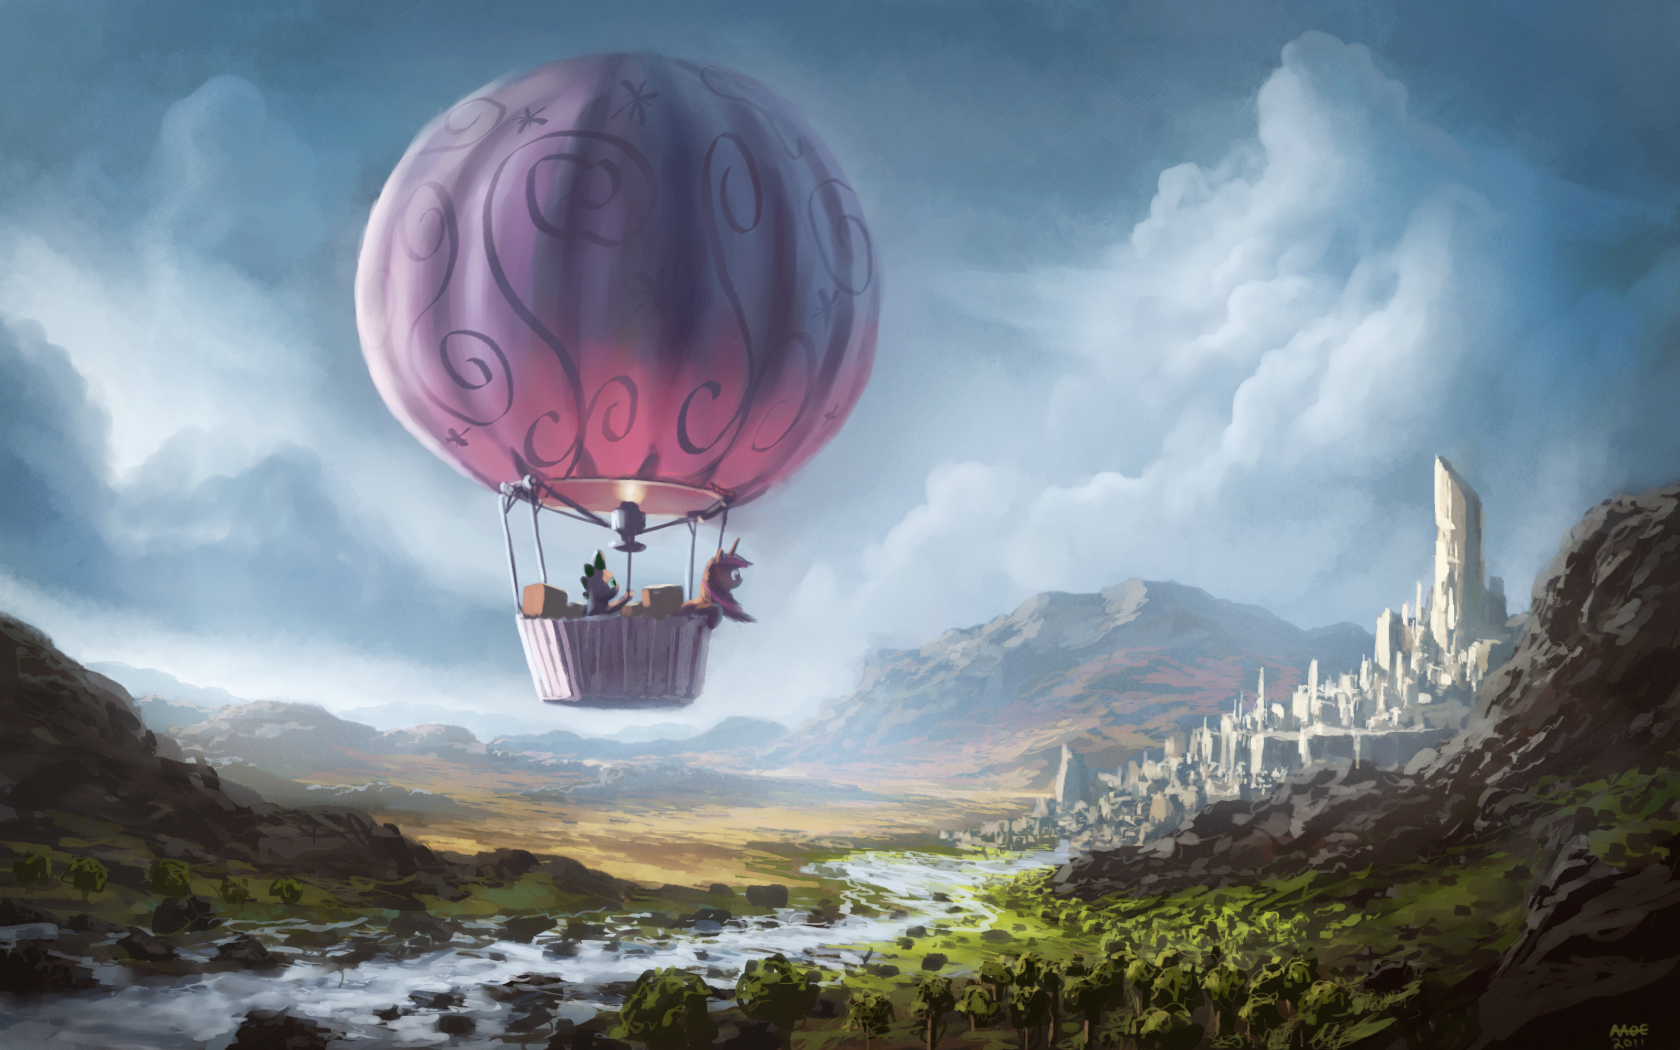 Balloon Landscape by Moe